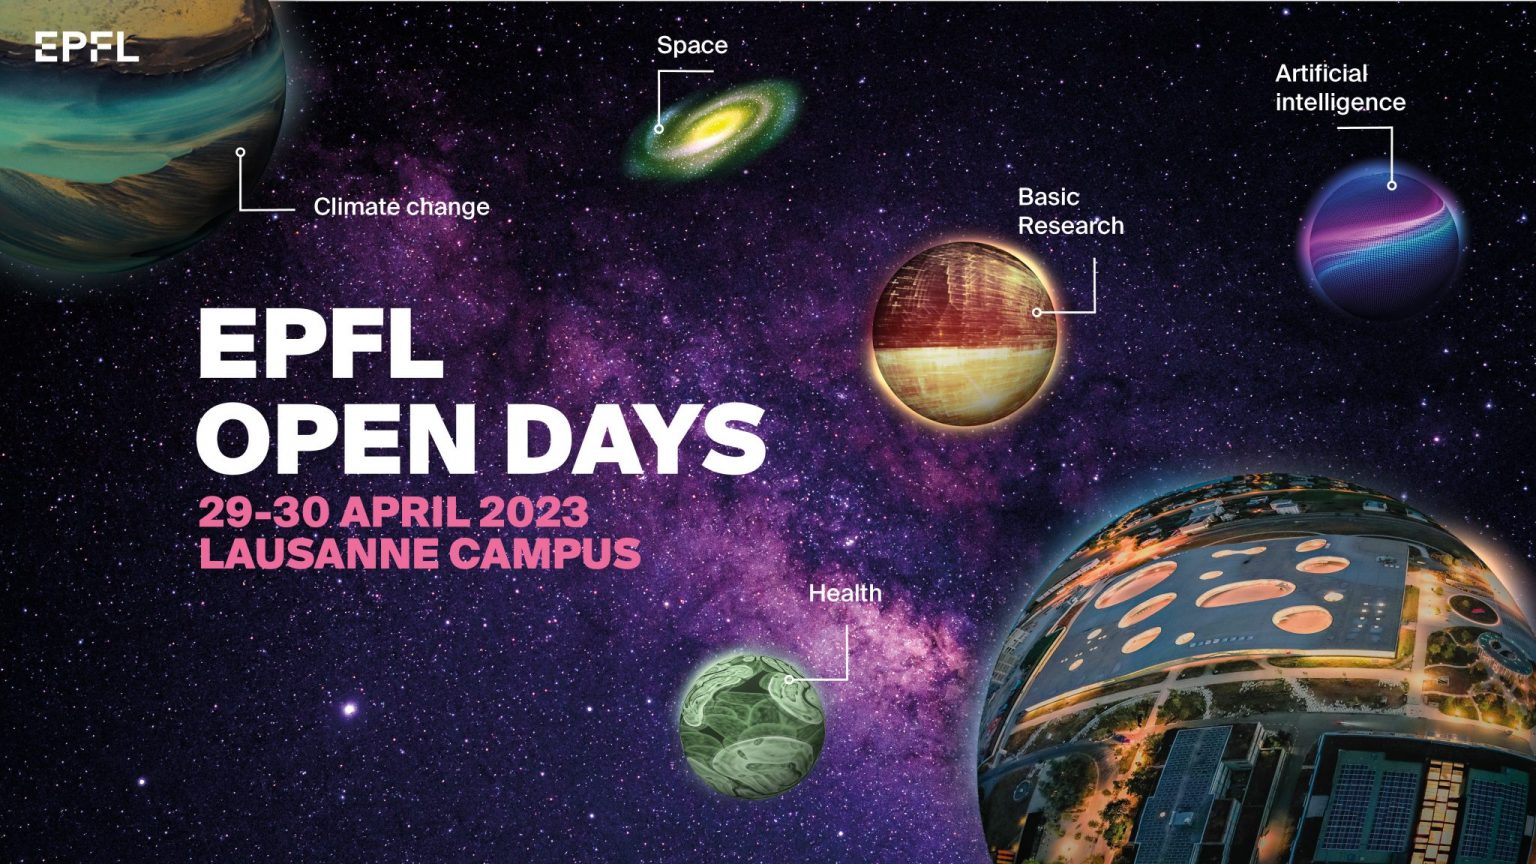 EPFL Open Days